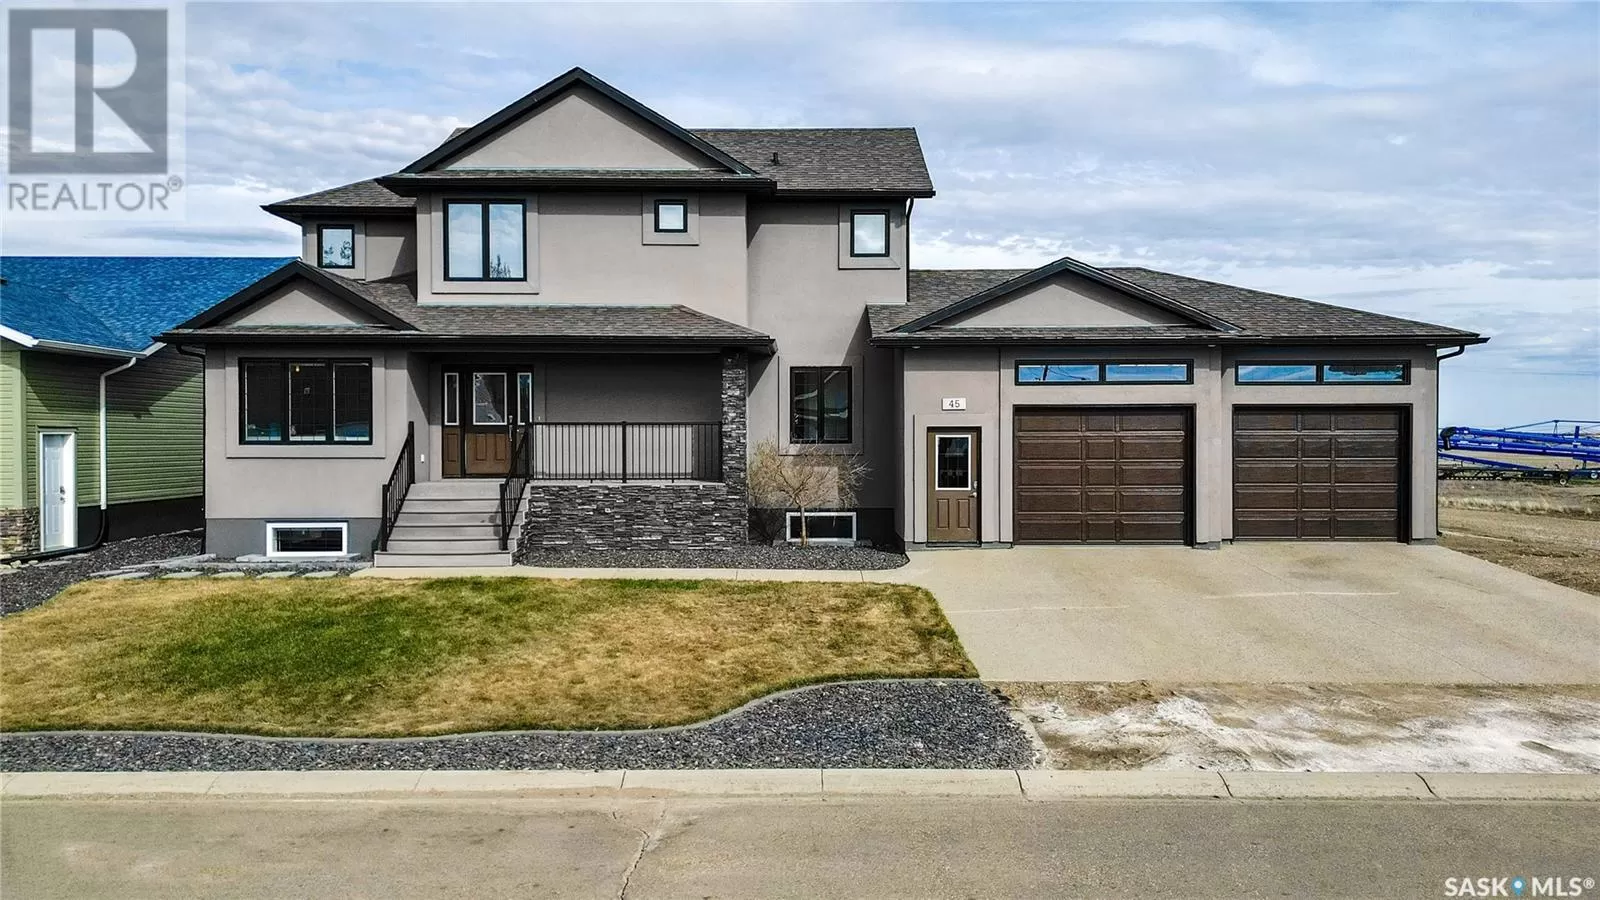 House for rent: 45 Crescent Drive, Avonlea, Saskatchewan S0H 0C0